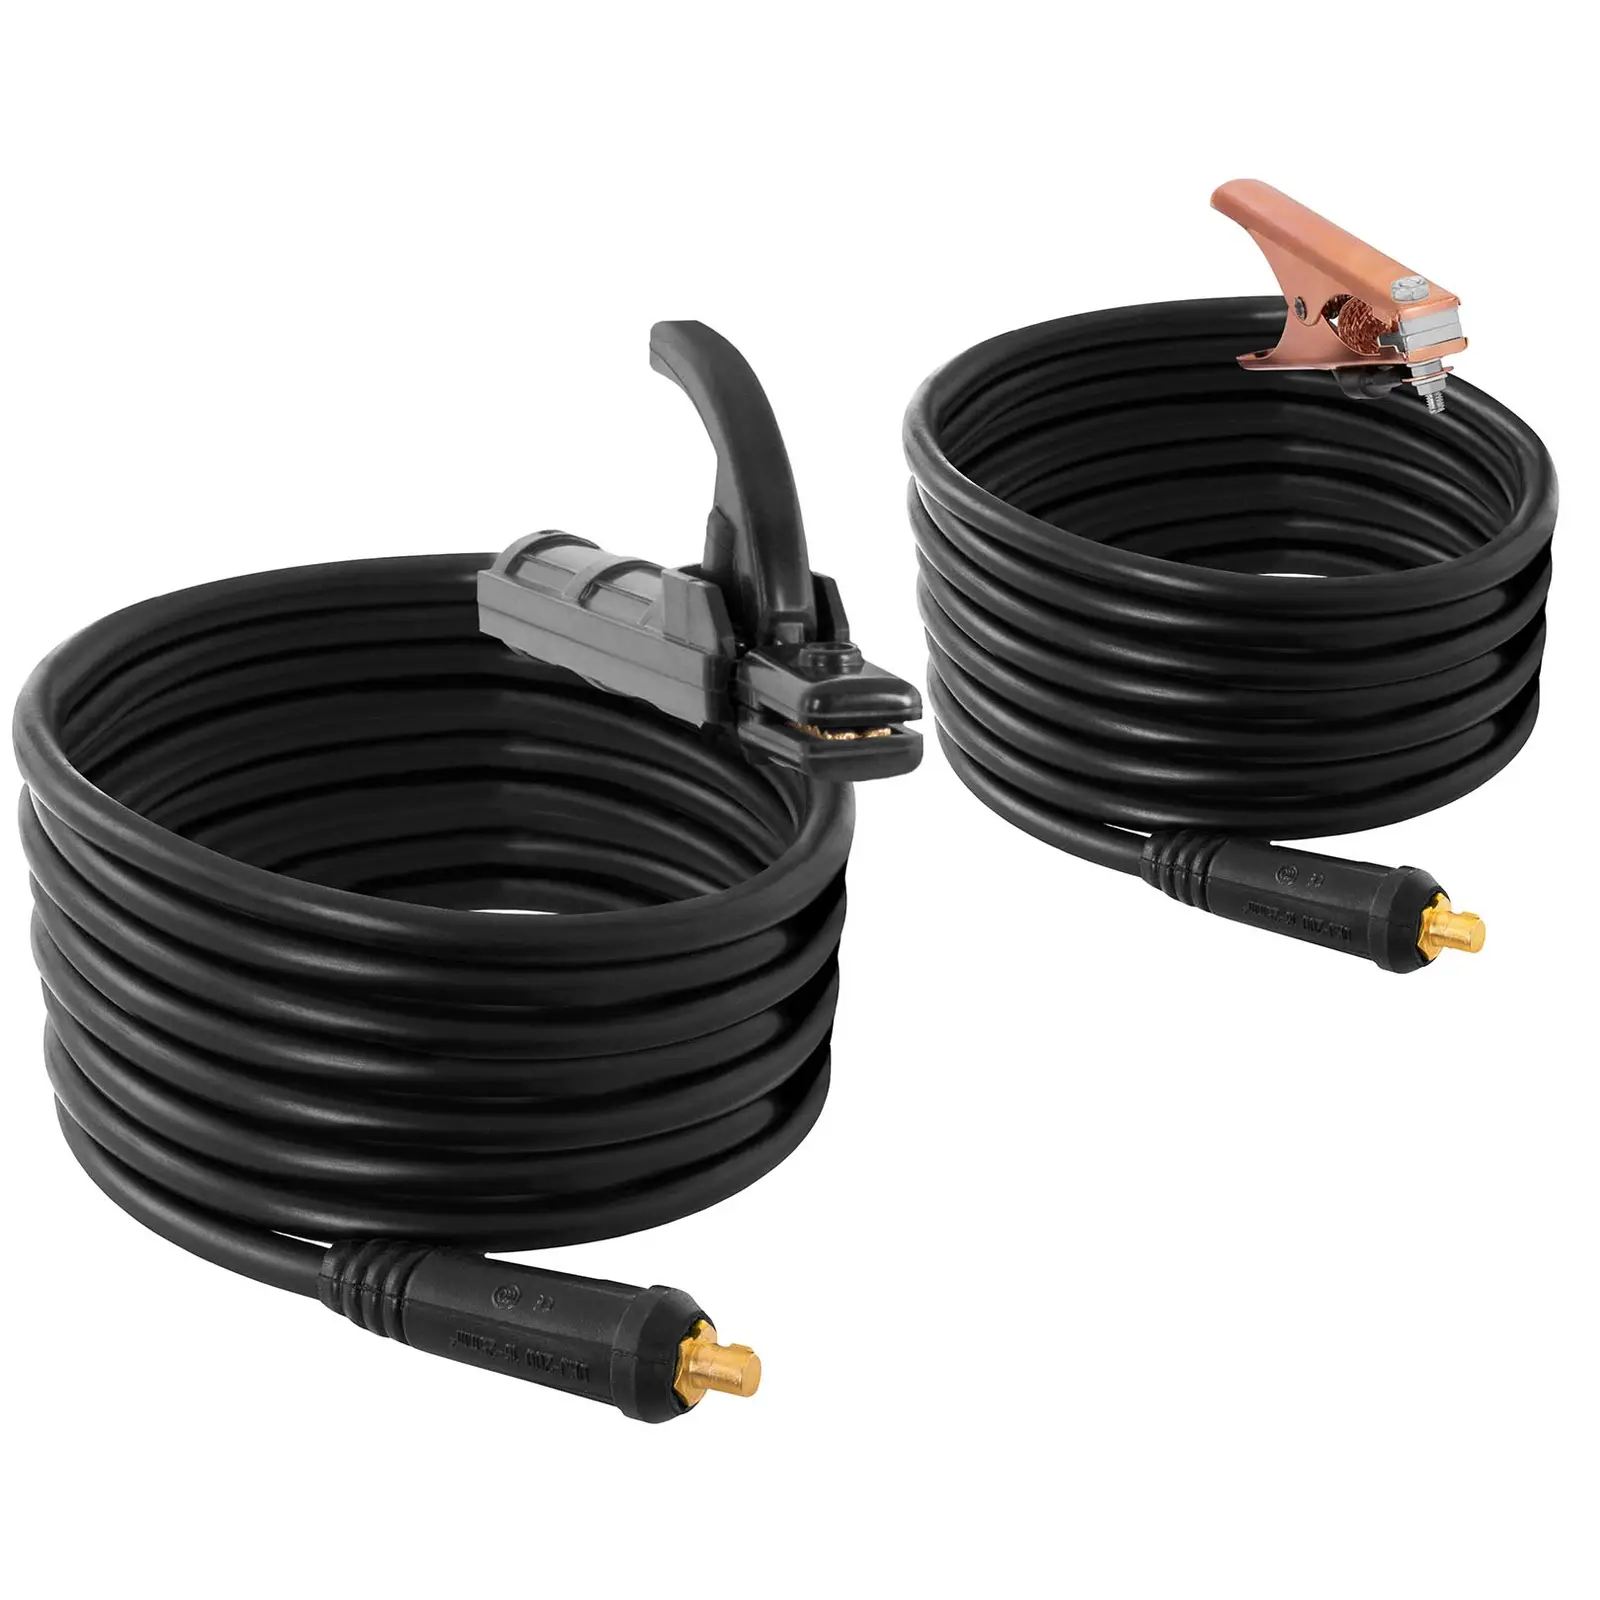 Svejsesæt elektrodesvejser - 250 A - 8 m kabel - svejseelektroder E6013 rutil-cellulose - 3,2 x 350 mm - 2 x 5 kg